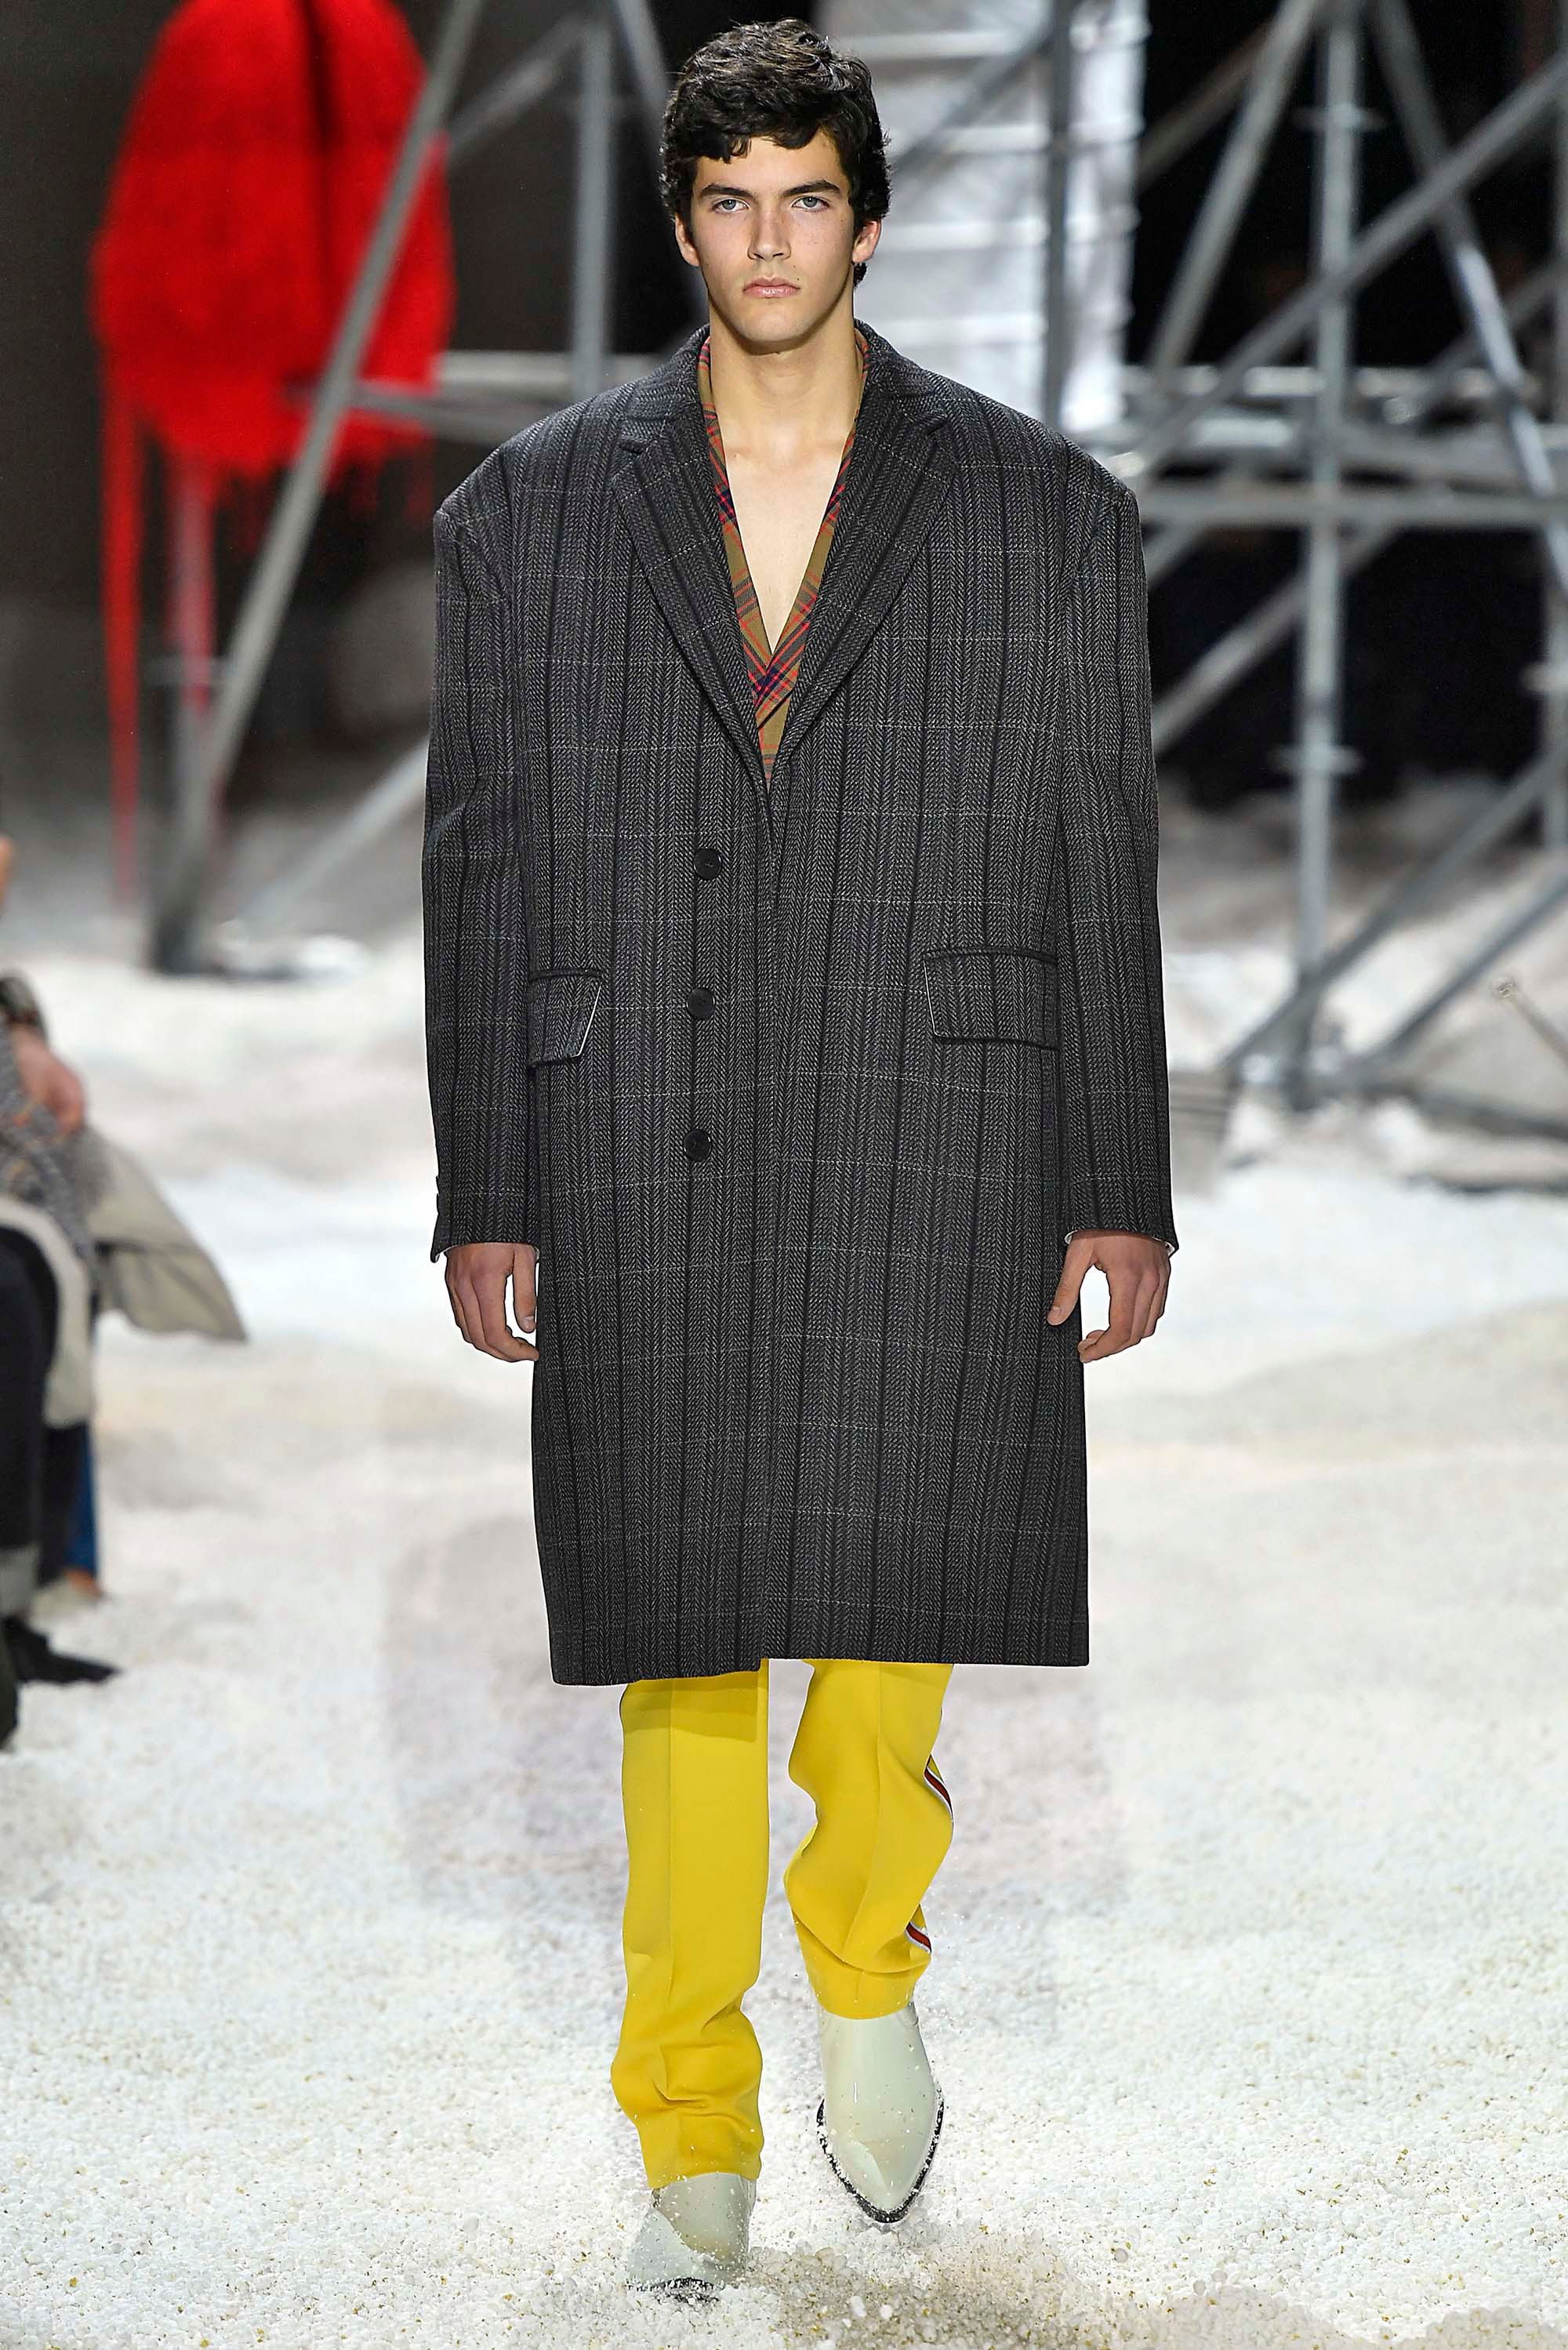 Calvin Klein 205W39NYC F/W 18 menswear #4 - The Fashion Search Engine -  TAGWALK